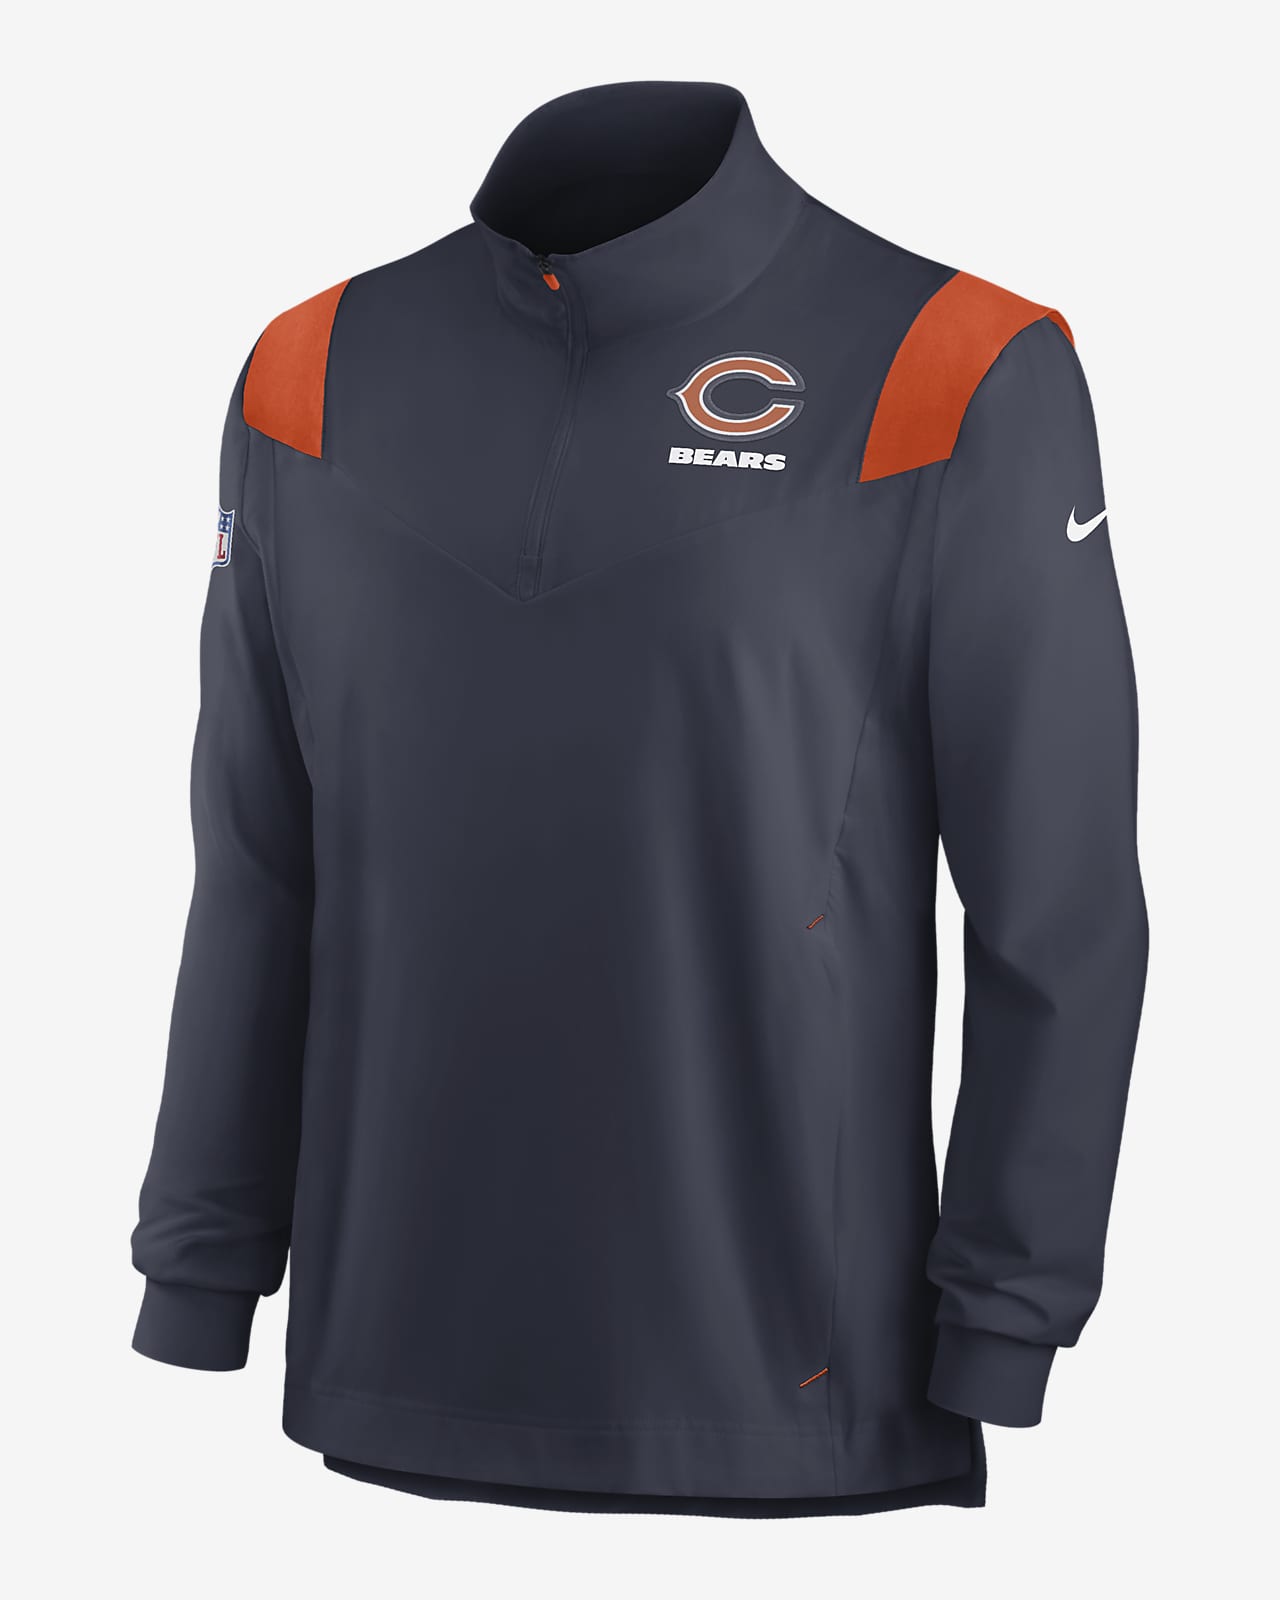 Nike Repel Coach (NFL Chicago Bears) Men's 1/4-Zip Jacket